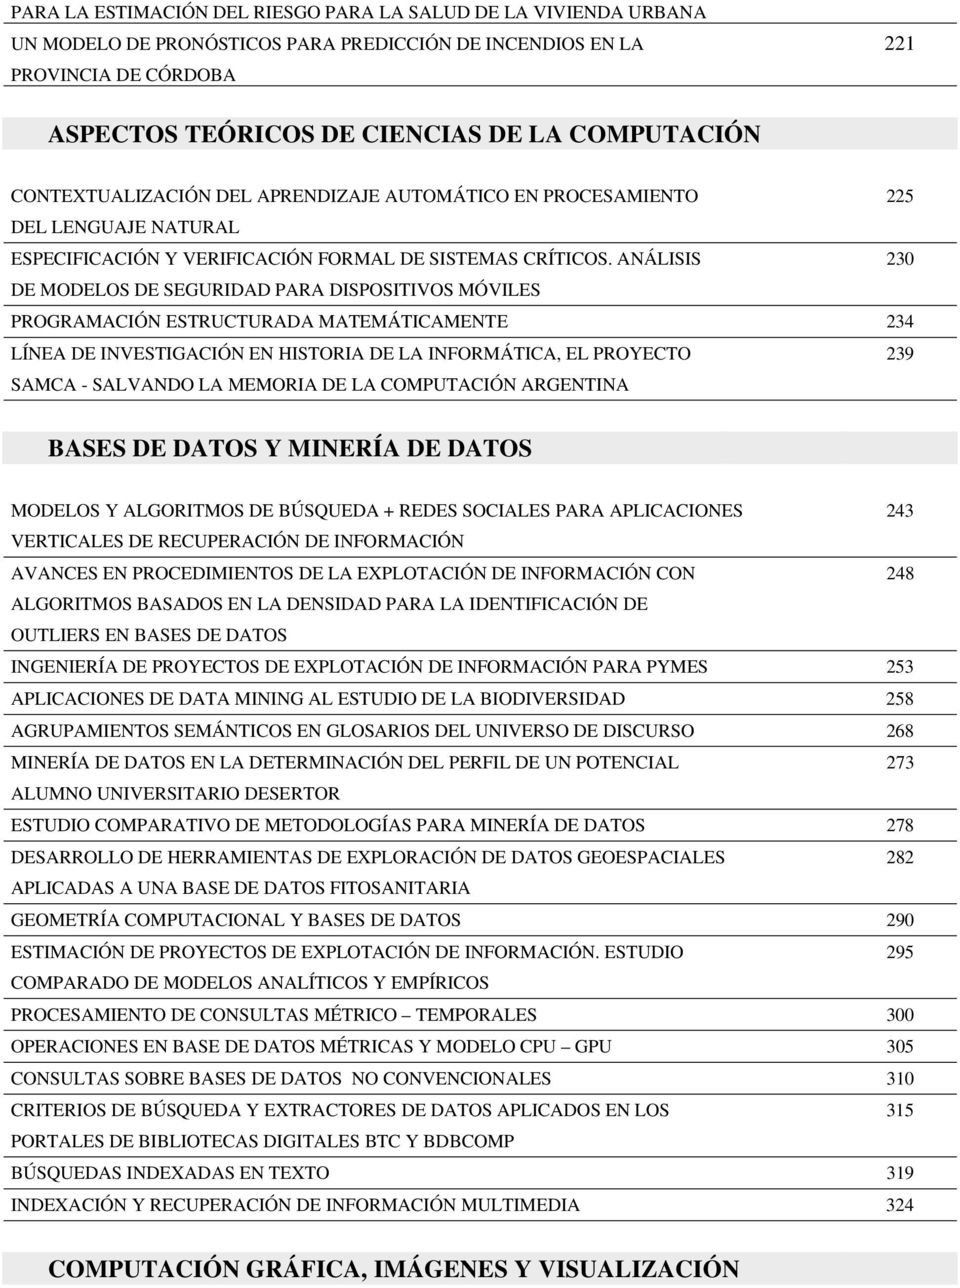 ANÁLISIS 230 DE MODELOS DE SEGURIDAD PARA DISPOSITIVOS MÓVILES PROGRAMACIÓN ESTRUCTURADA MATEMÁTICAMENTE 234 LÍNEA DE INVESTIGACIÓN EN HISTORIA DE LA INFORMÁTICA, EL PROYECTO 239 SAMCA - SALVANDO LA